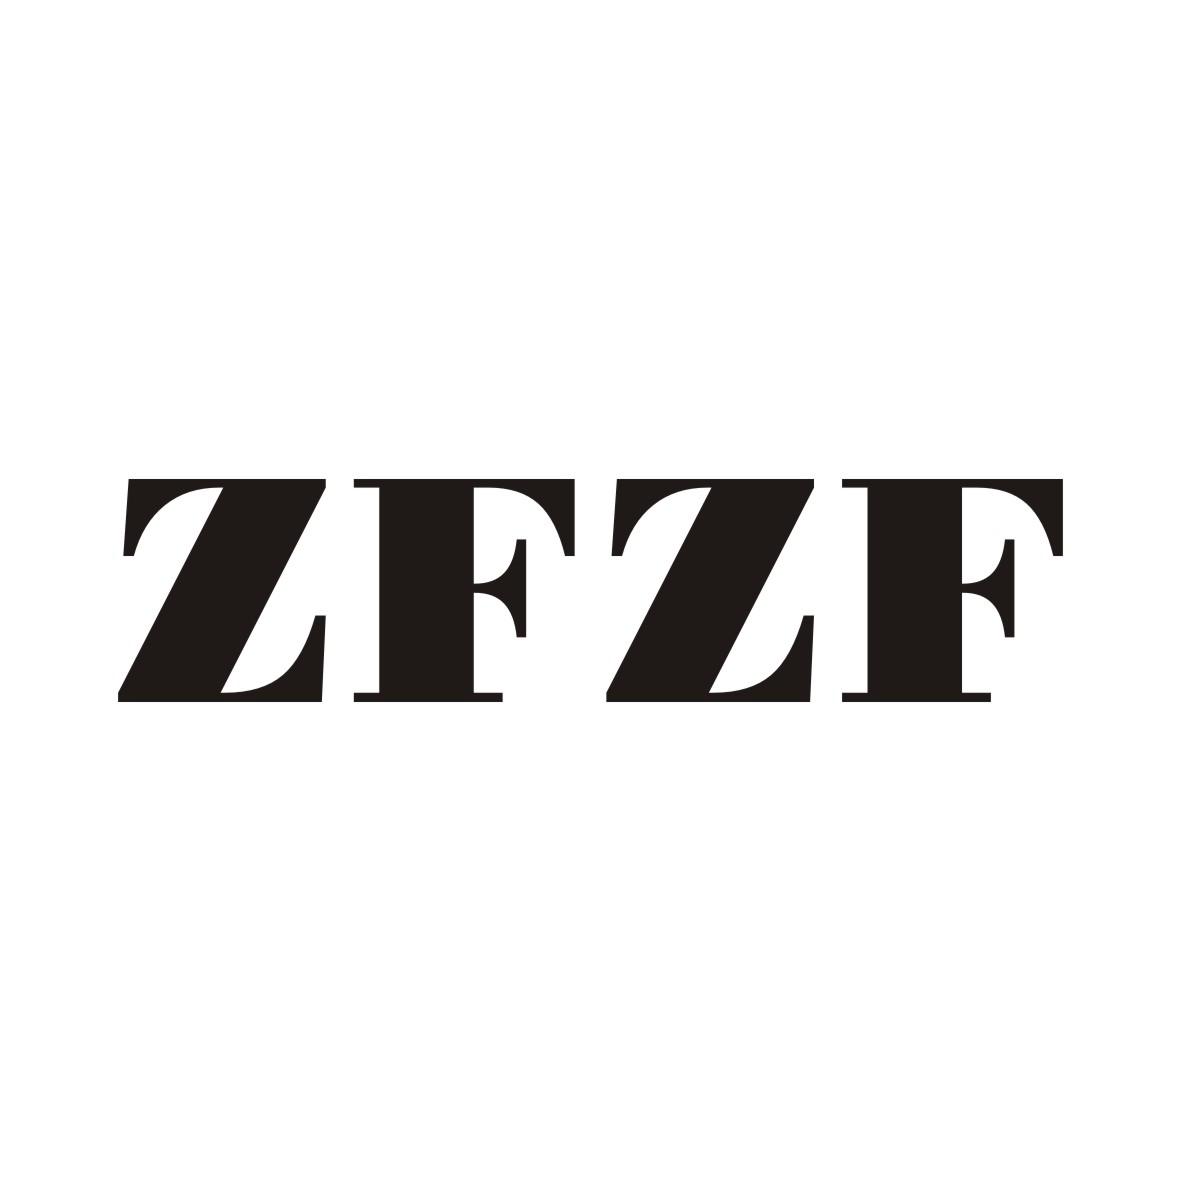 转让商标-ZFZF